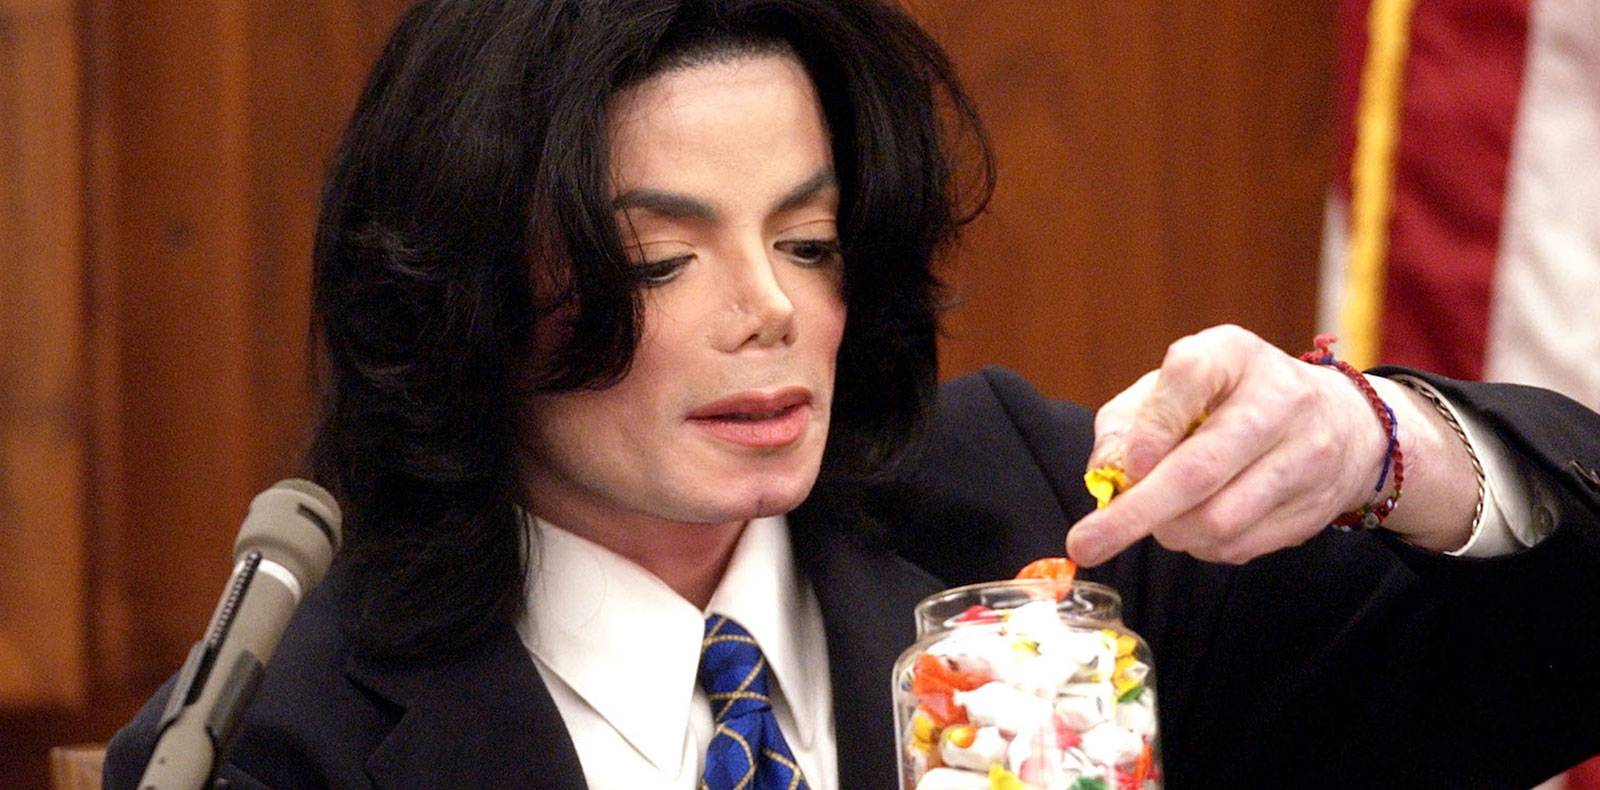 The re-enactment of Michael Jackson's trial | Numéro Magazine